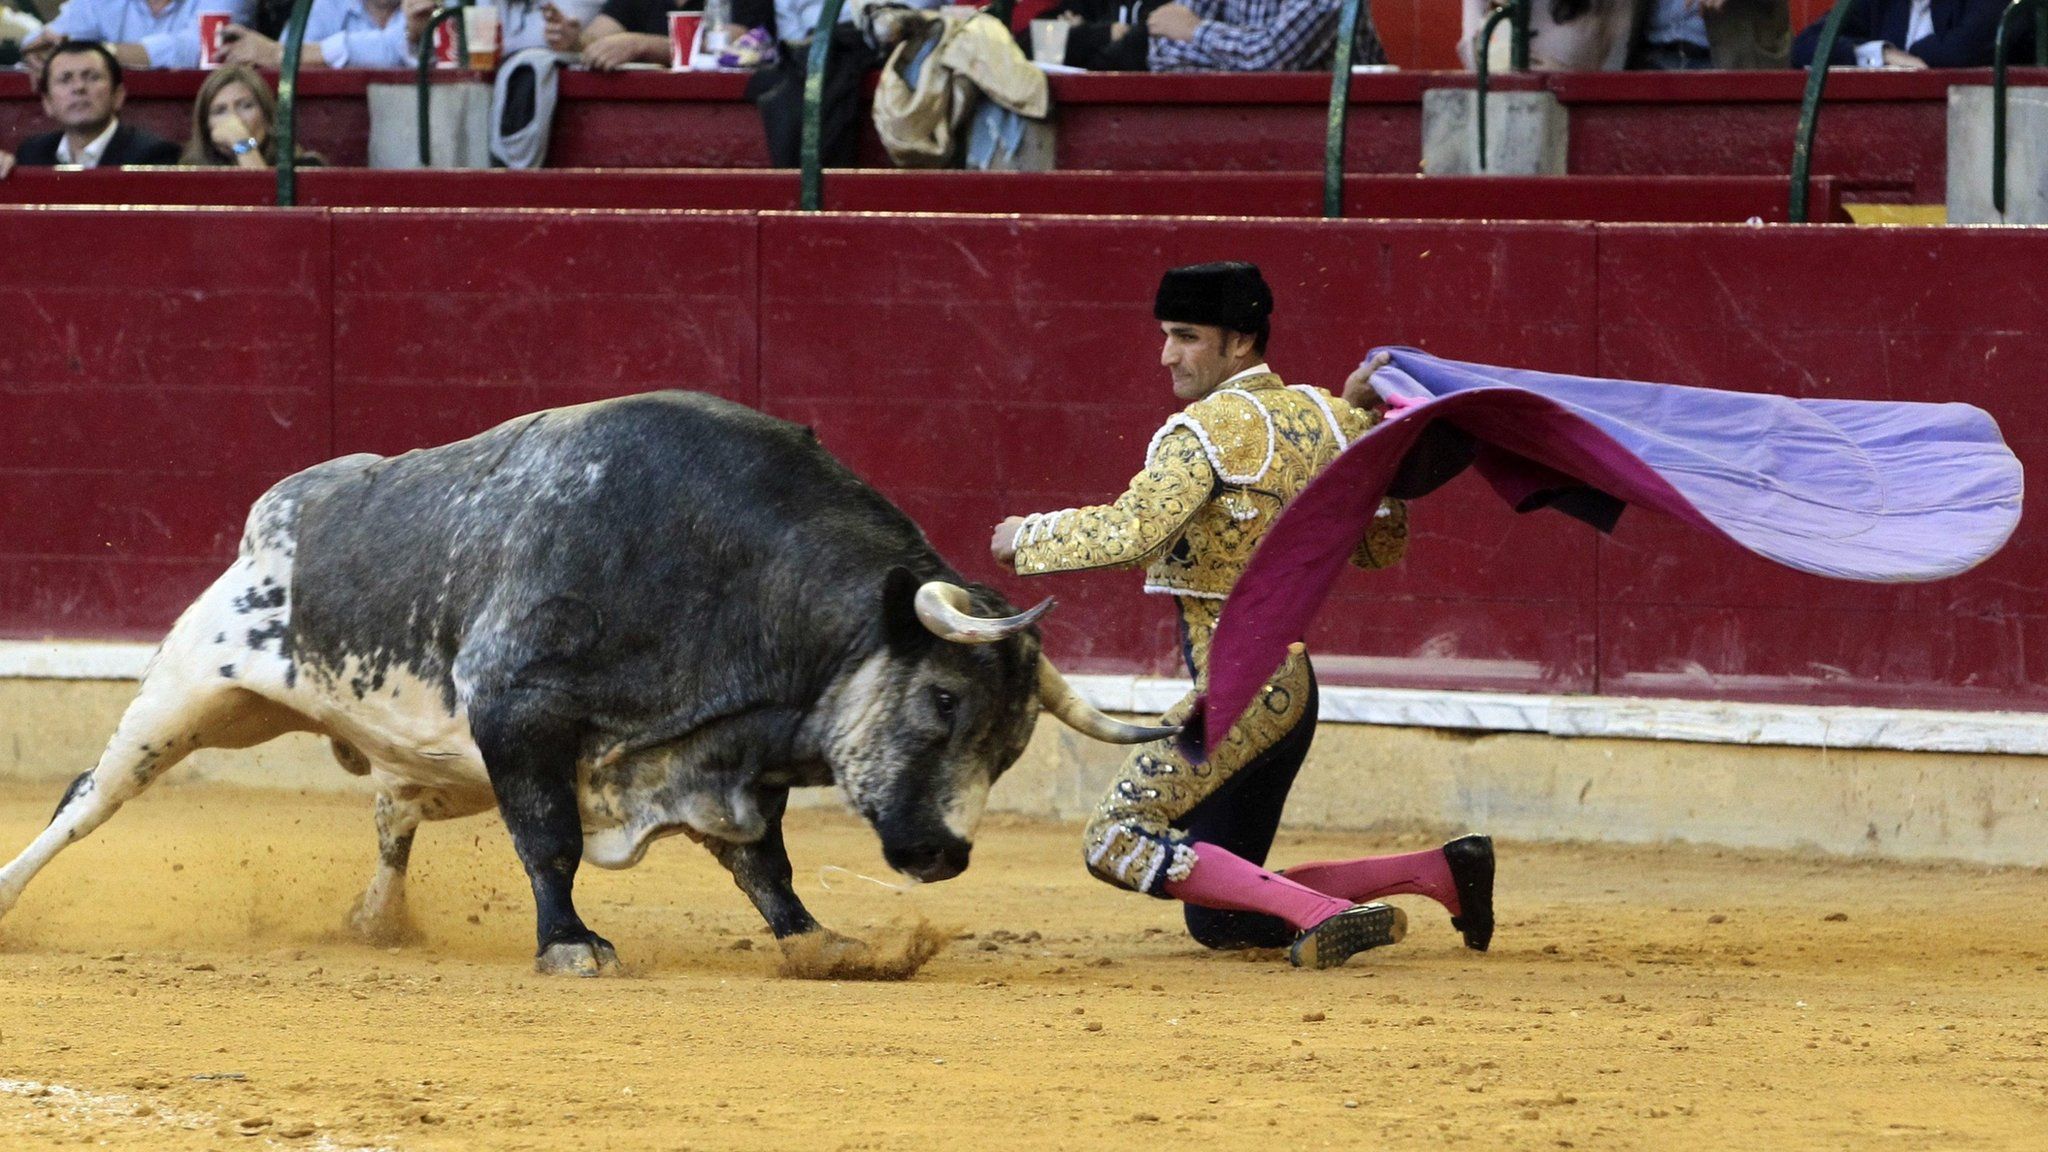 Spanish bullfighter Alberto Alvarez fights against his first bull during the El Pilar Fair bullfight in Zaragoza, Spain, 9 October 2016